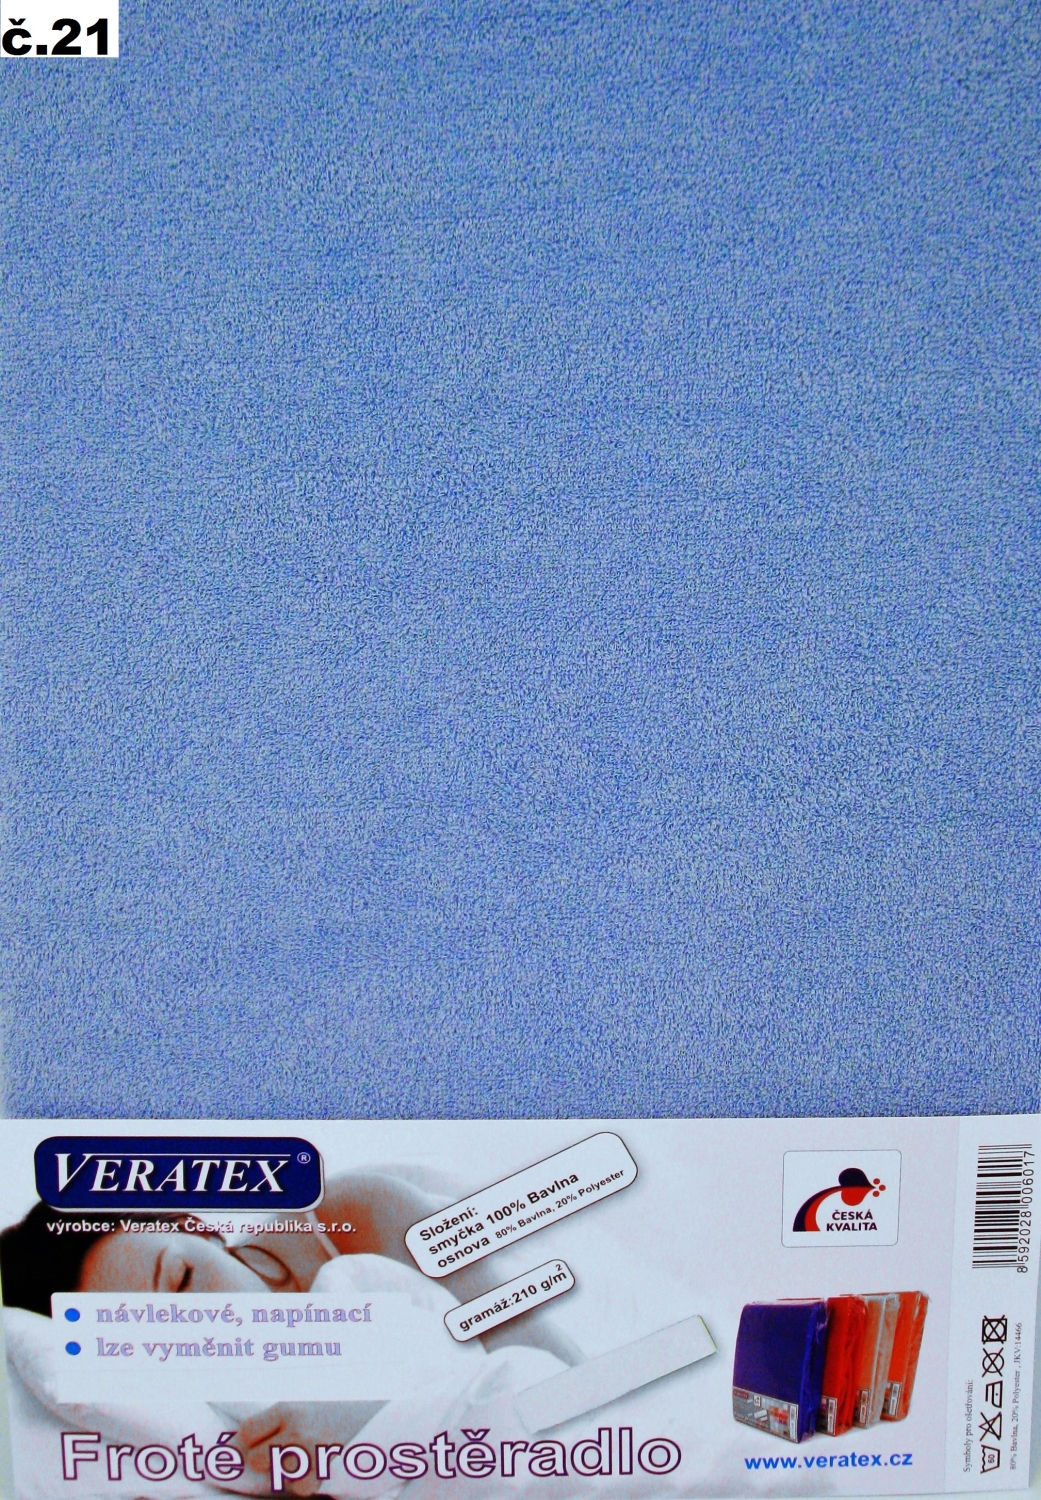 Veratex Froté prostěradlo 120x200/16 cm (č.21-sv.modrá) 120x200 cm